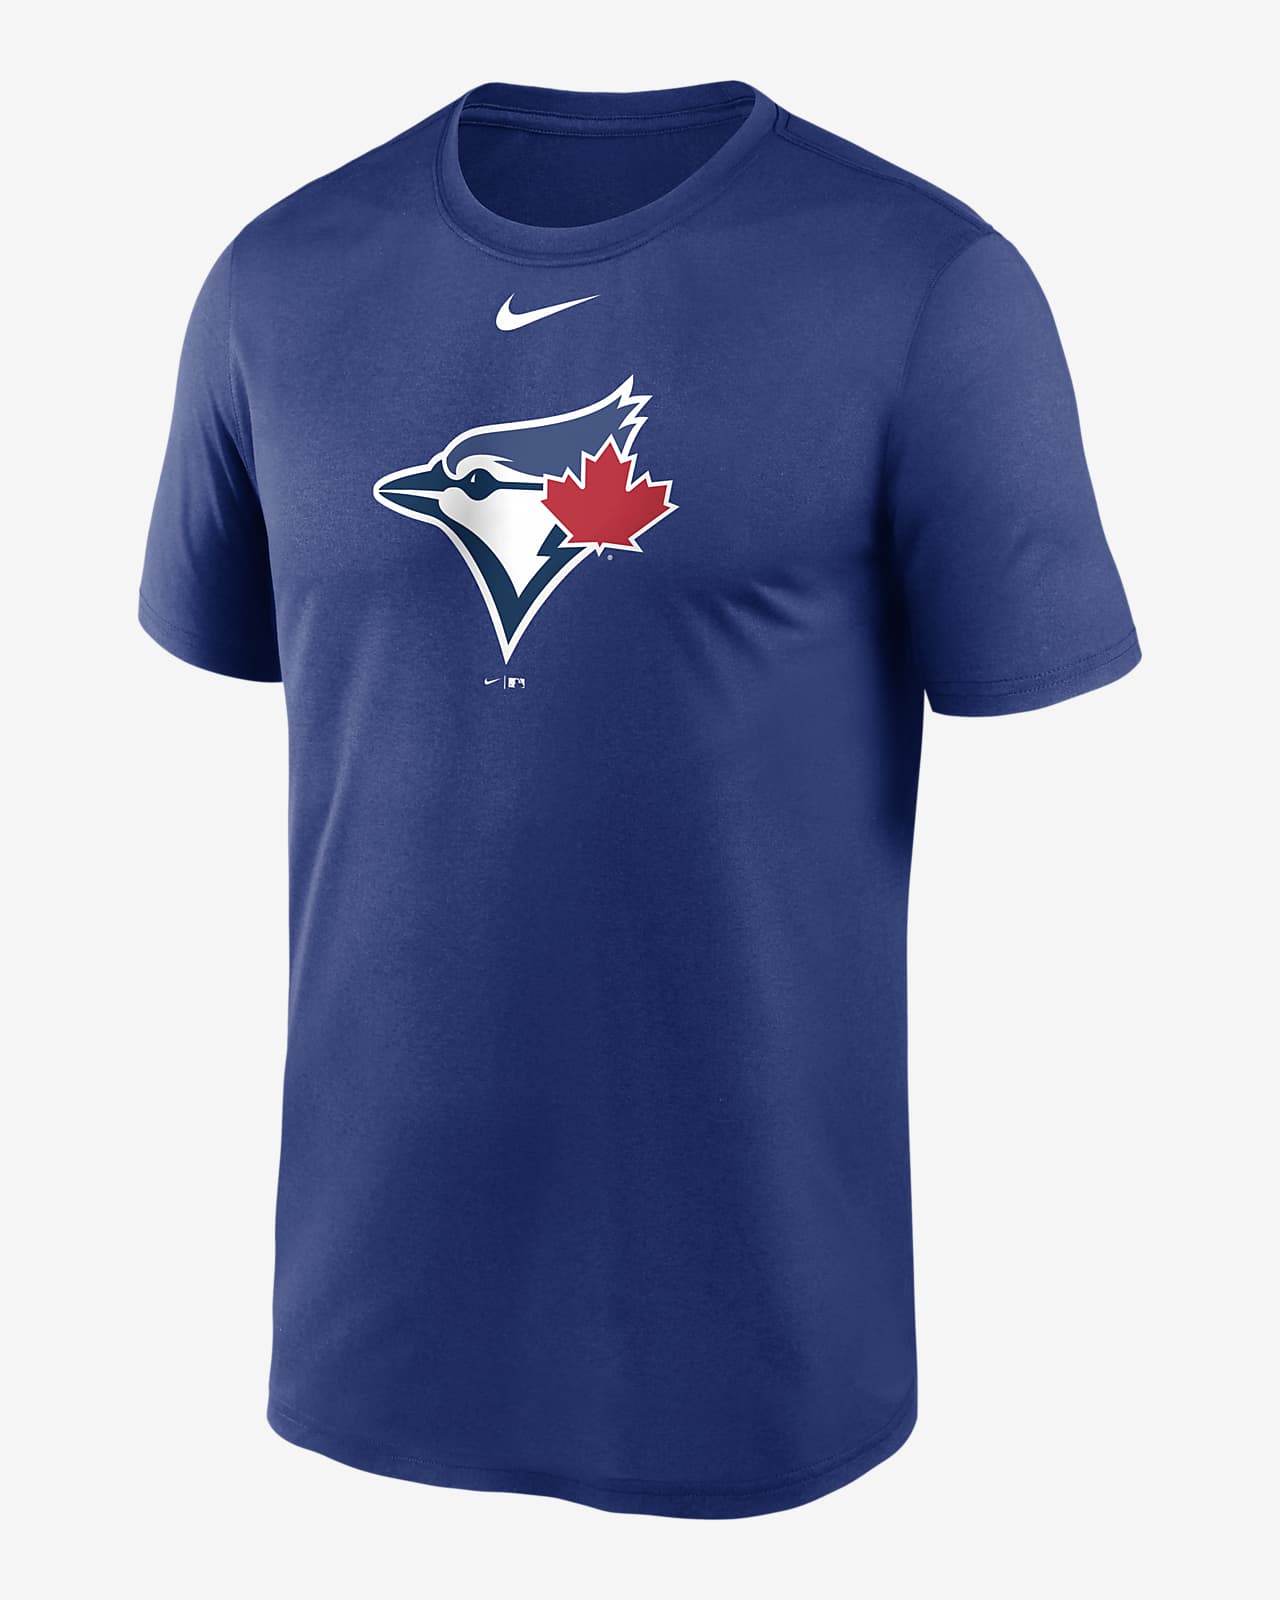 Nike Dri-FIT Logo Legend (MLB Toronto Blue Jays) Men's T-Shirt